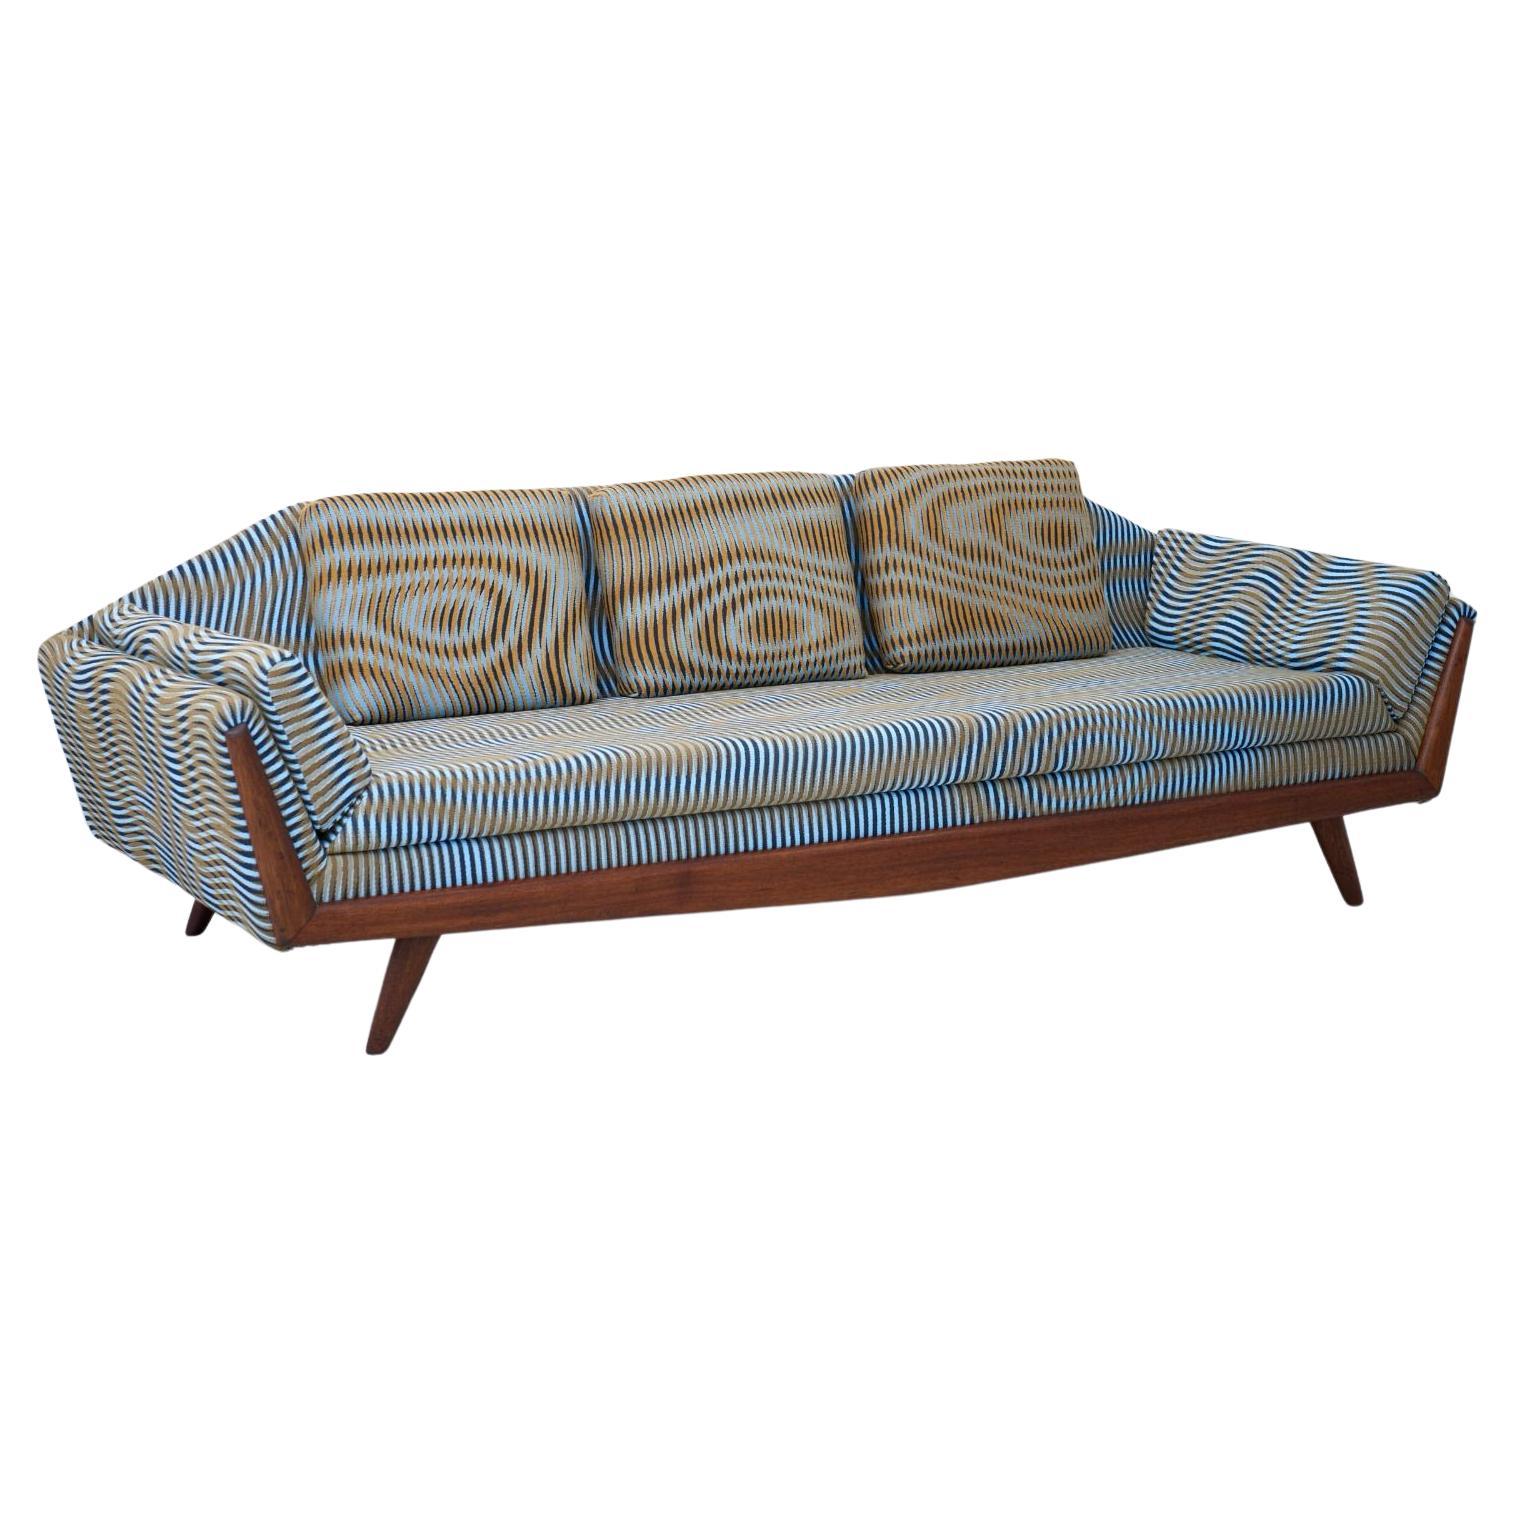 Dieses schöne Sofa wurde von dem Berliner Textilstudio Case Studies neu mit einem maßgeschneiderten Stoff bezogen. Die geschnitzten Holzbeine und die ausgeschnittene Rückenlehne machen den Reiz dieses skulpturalen Sofas 